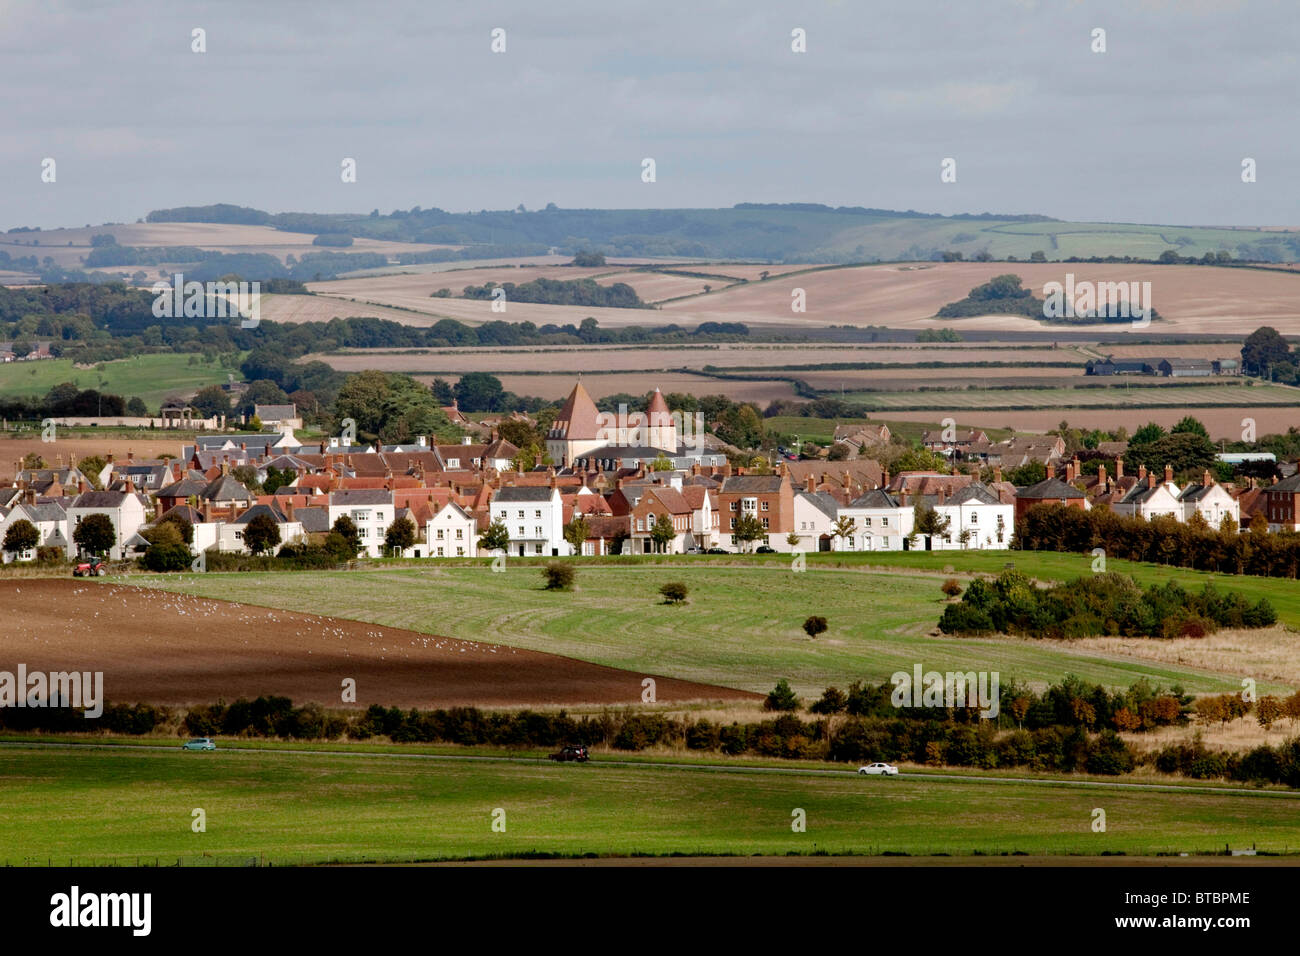 La vista dal castello di inaugurale del villaggio di Poundbury sviluppo e azienda agricola terre possedute dal principe Charles. DAVID MANSELL Foto Stock